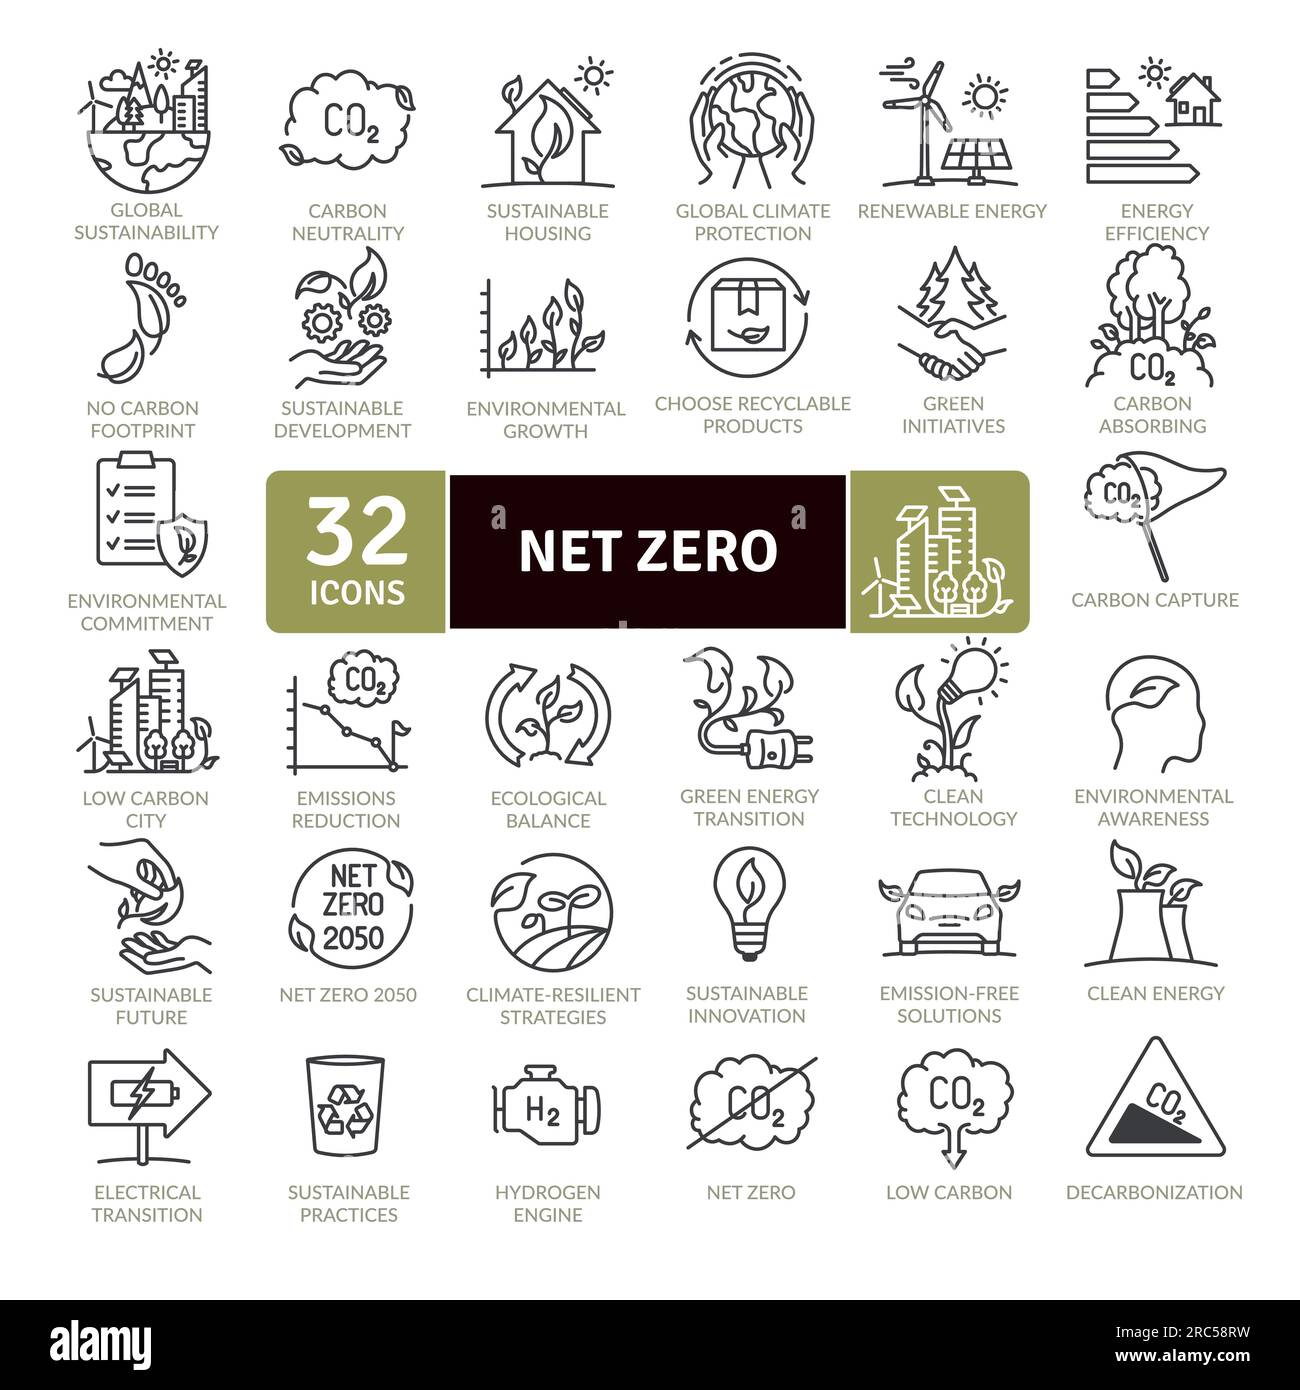 NET Zero und Reduction of Emissions by 2050 – Symbolpaket. Sammlung von Symbolen mit dünnen Linien Stock Vektor